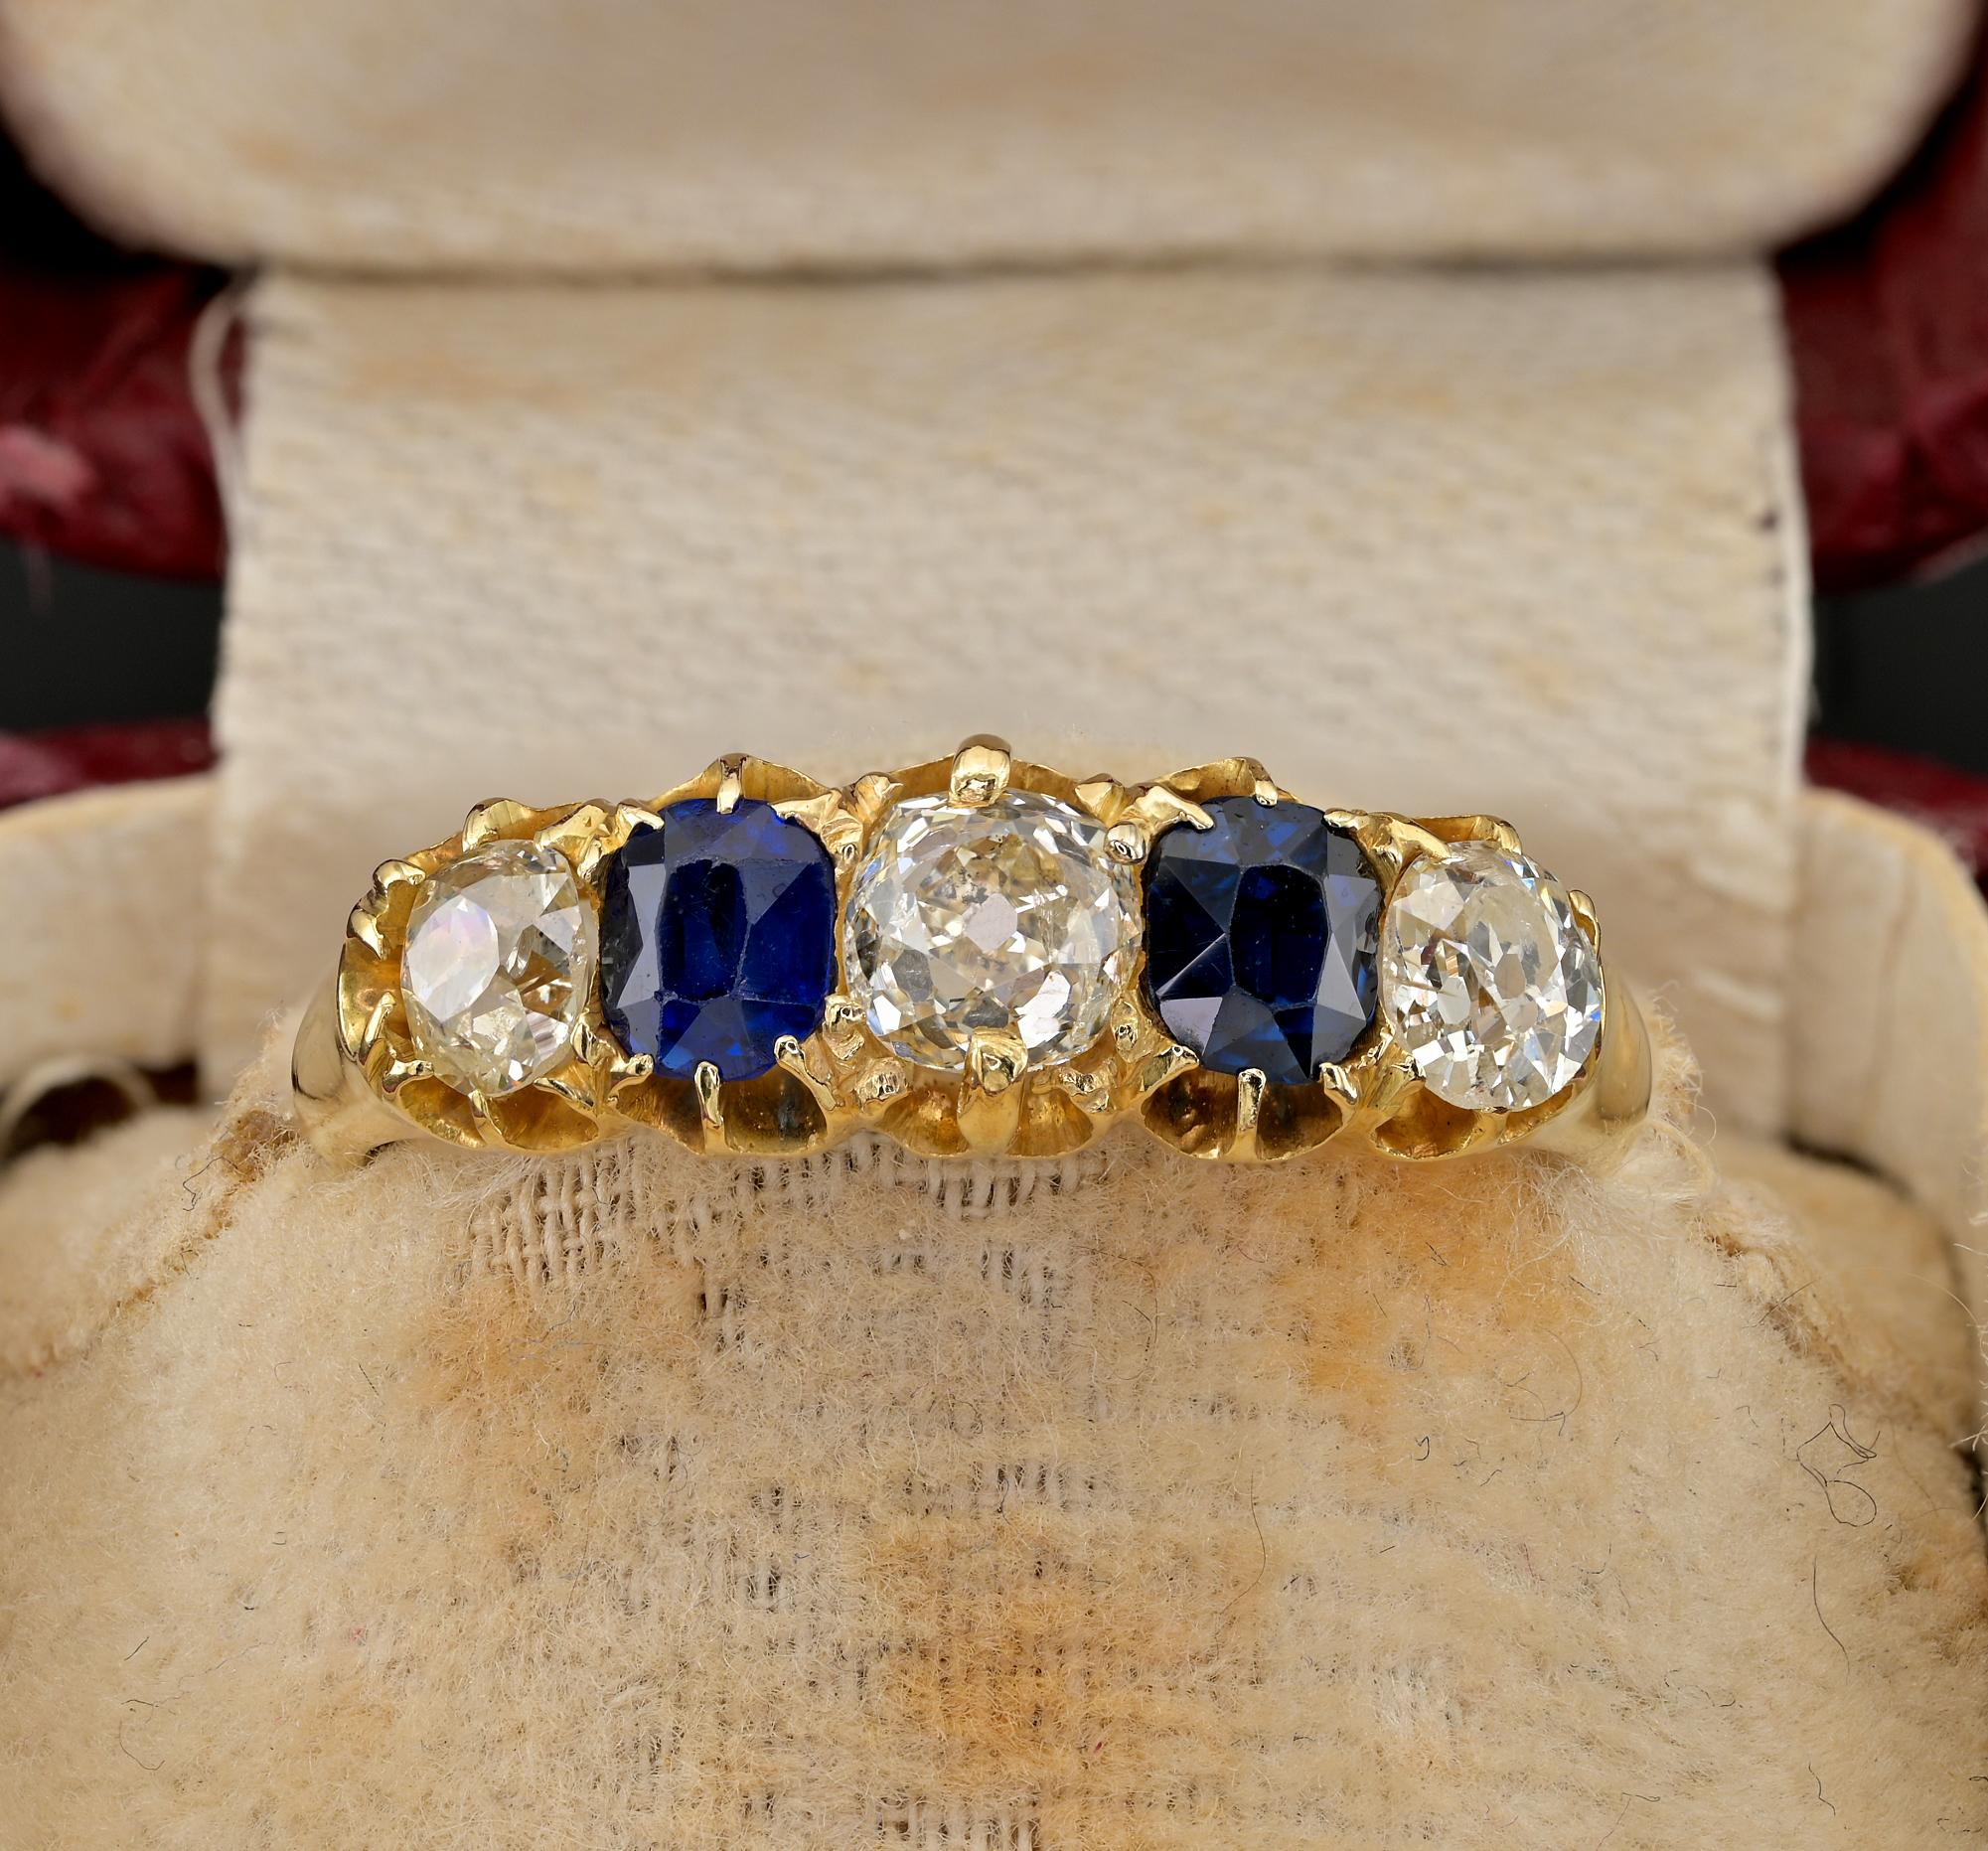 Dieser wunderschöne antike Ring aus der viktorianischen Zeit stammt aus dem Jahr 1890.
Traditionelle Fünf-Stein-Fassung, handgefertigt aus massivem 18-karätigem Gold, gestempelt
Die Einstellung umfasst eine Auswahl von 3  helle weiße Diamanten mit